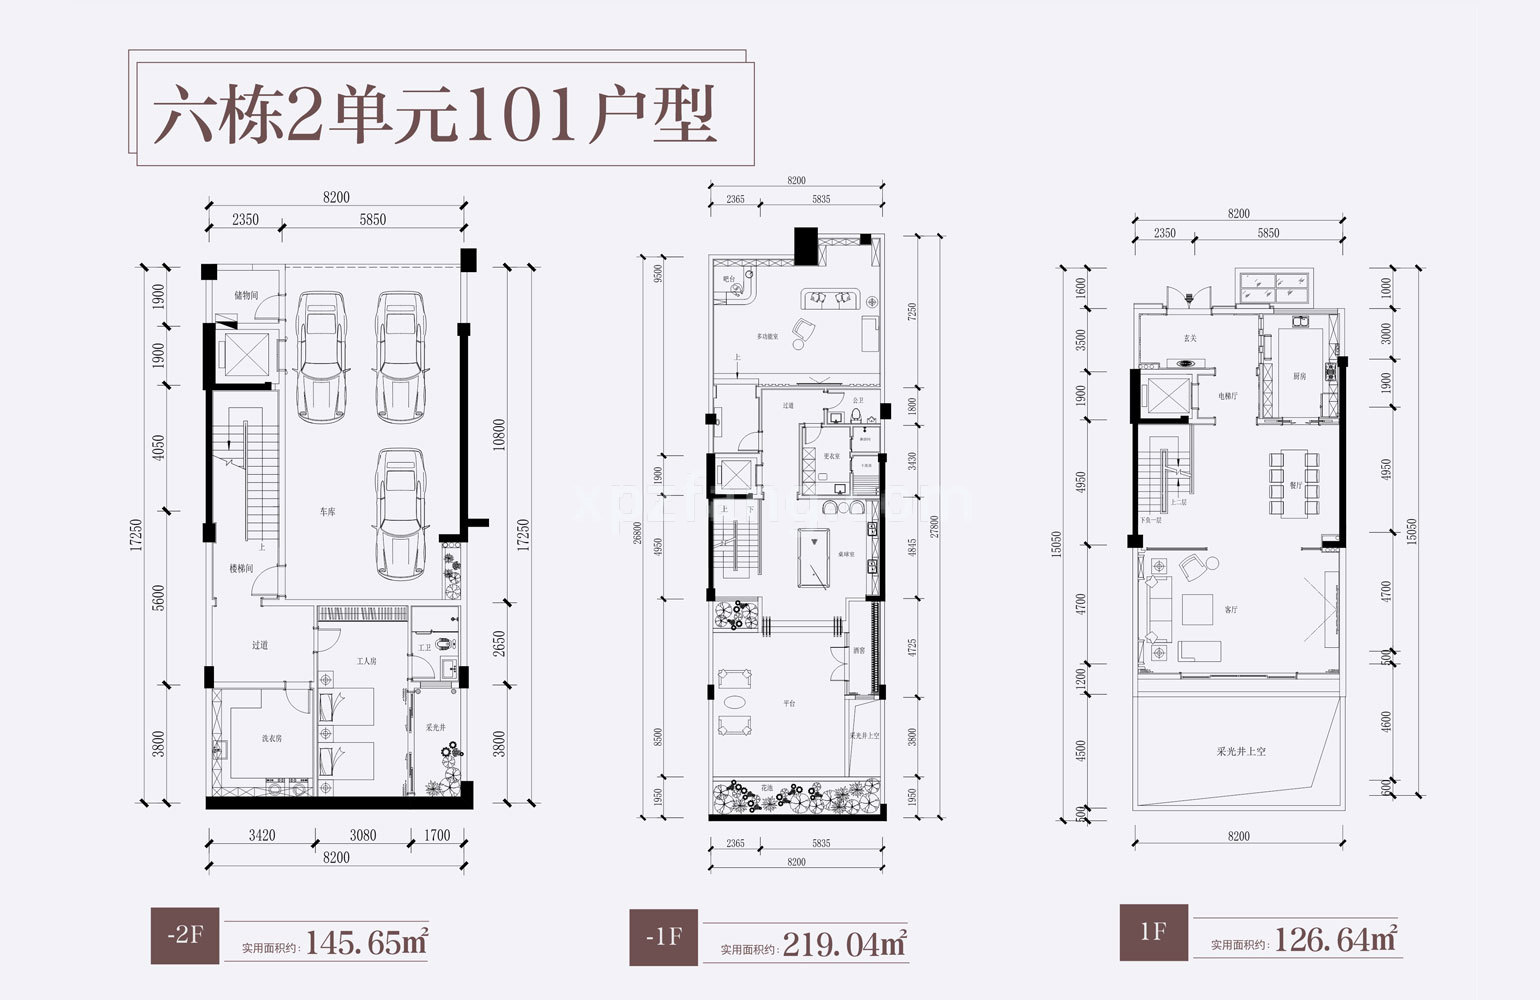 别墅101户型-2F、-1F、1F 实用面积854.97㎡